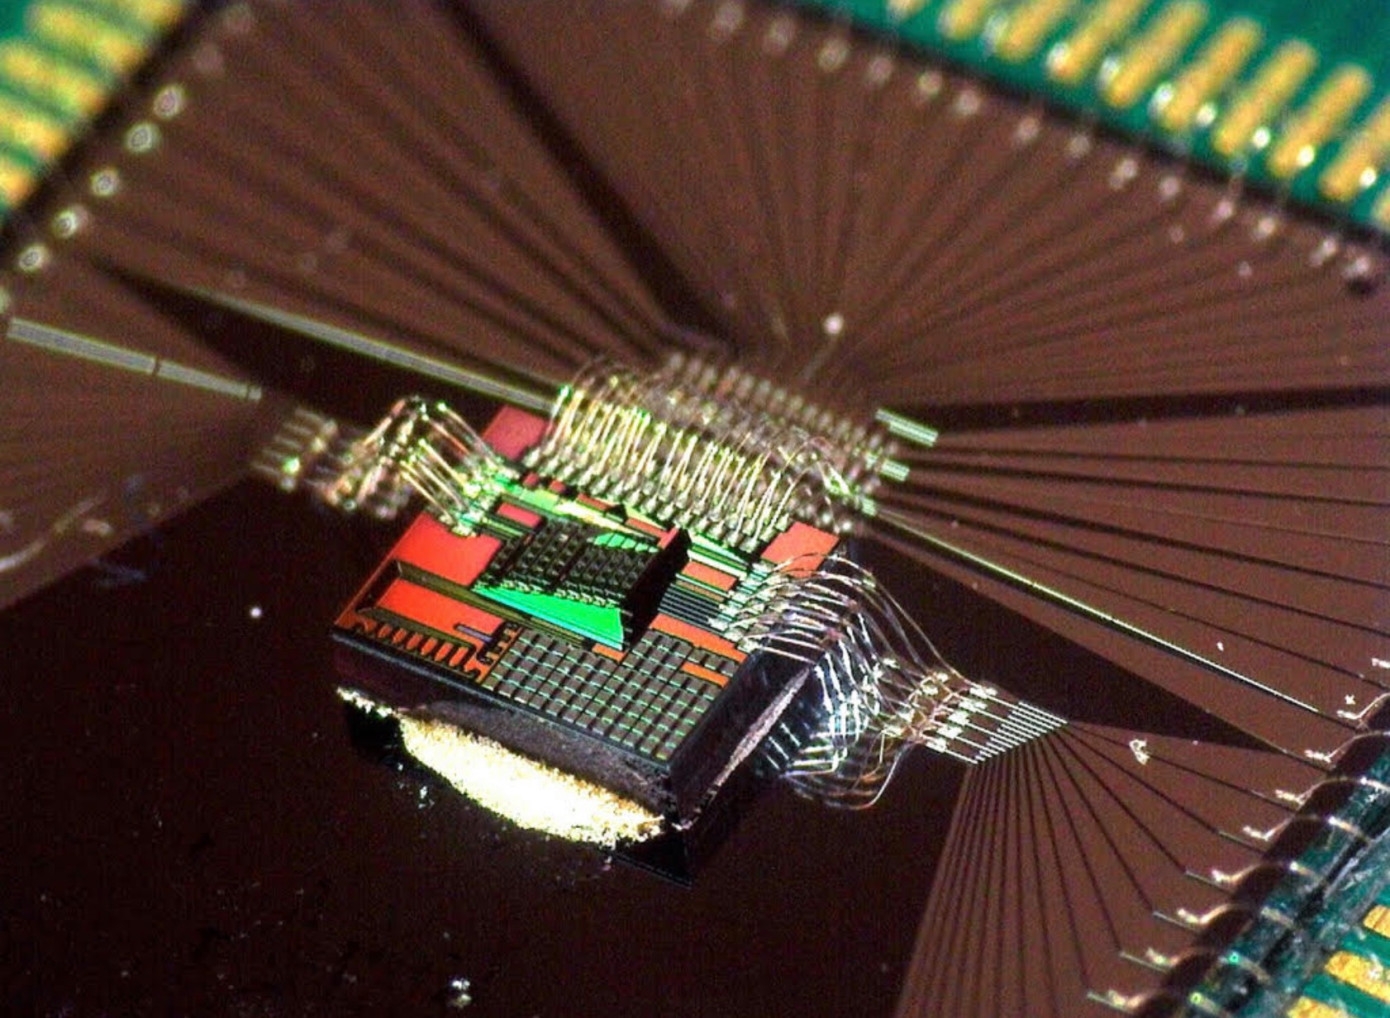  Стартап Luminous, занимающийся разработкой оптического ИИ чипа, получил 9 миллионов долларов инвестиций в первом раунде финасирования от группы инвесторов, в том числе Билла Гейтса и Трэвиса Каланика 